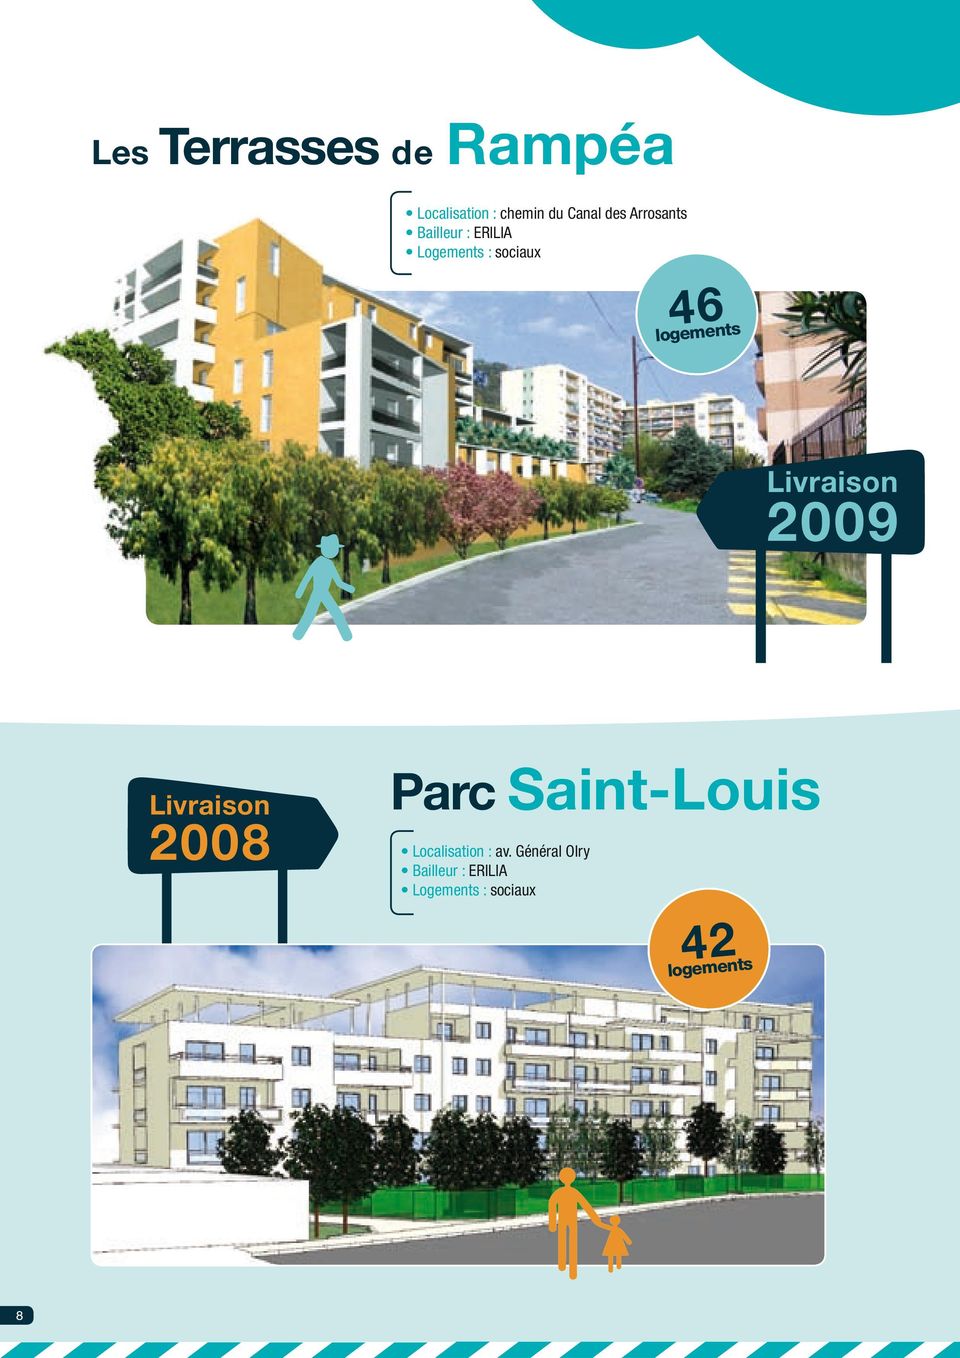 Livraison 2009 Livraison Parc Saint-Louis 2008 Localisation :